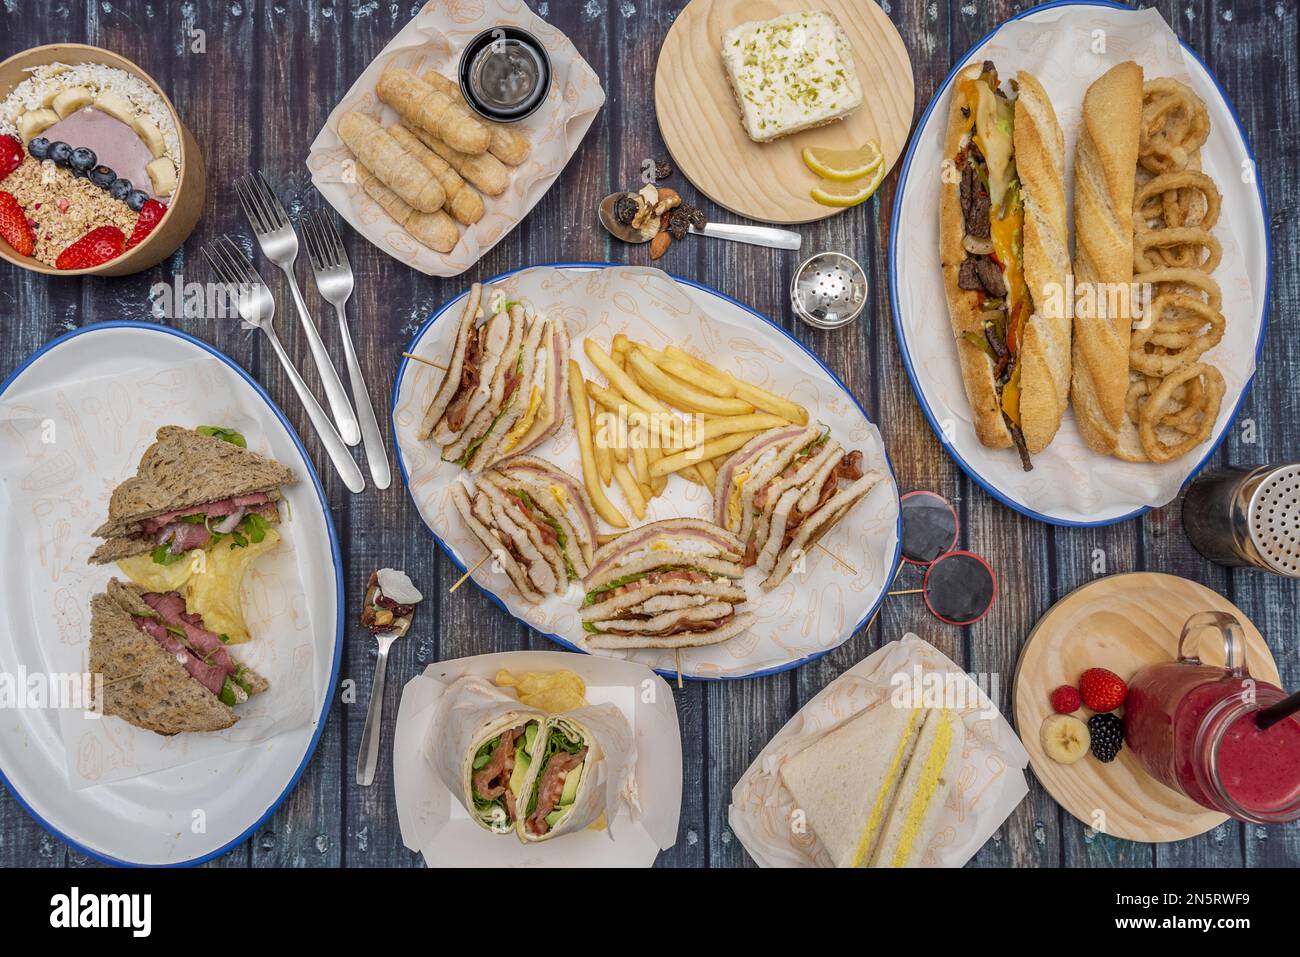 Set de platos de comida rapida, bocadillos, tequeños venezolanos, tartas y bocadillo de calamares Stock Photo